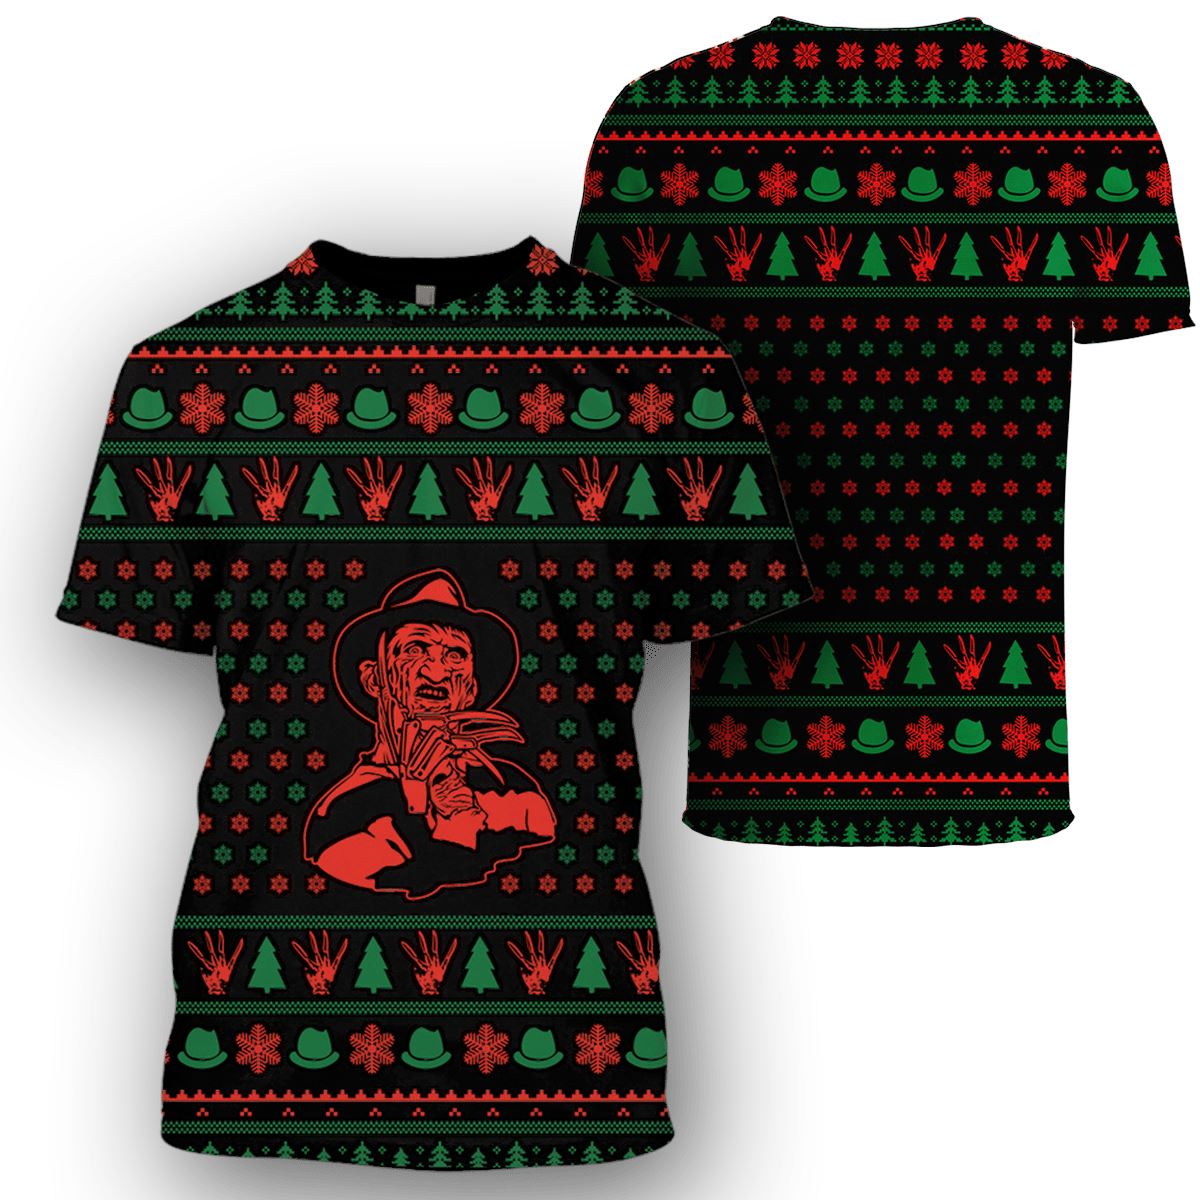 Freddy Krueger in Nightmare on Elm Street Custom T-shirt - Hoodies Apparel HD-MV110674 3D Custom Fleece Hoodies 